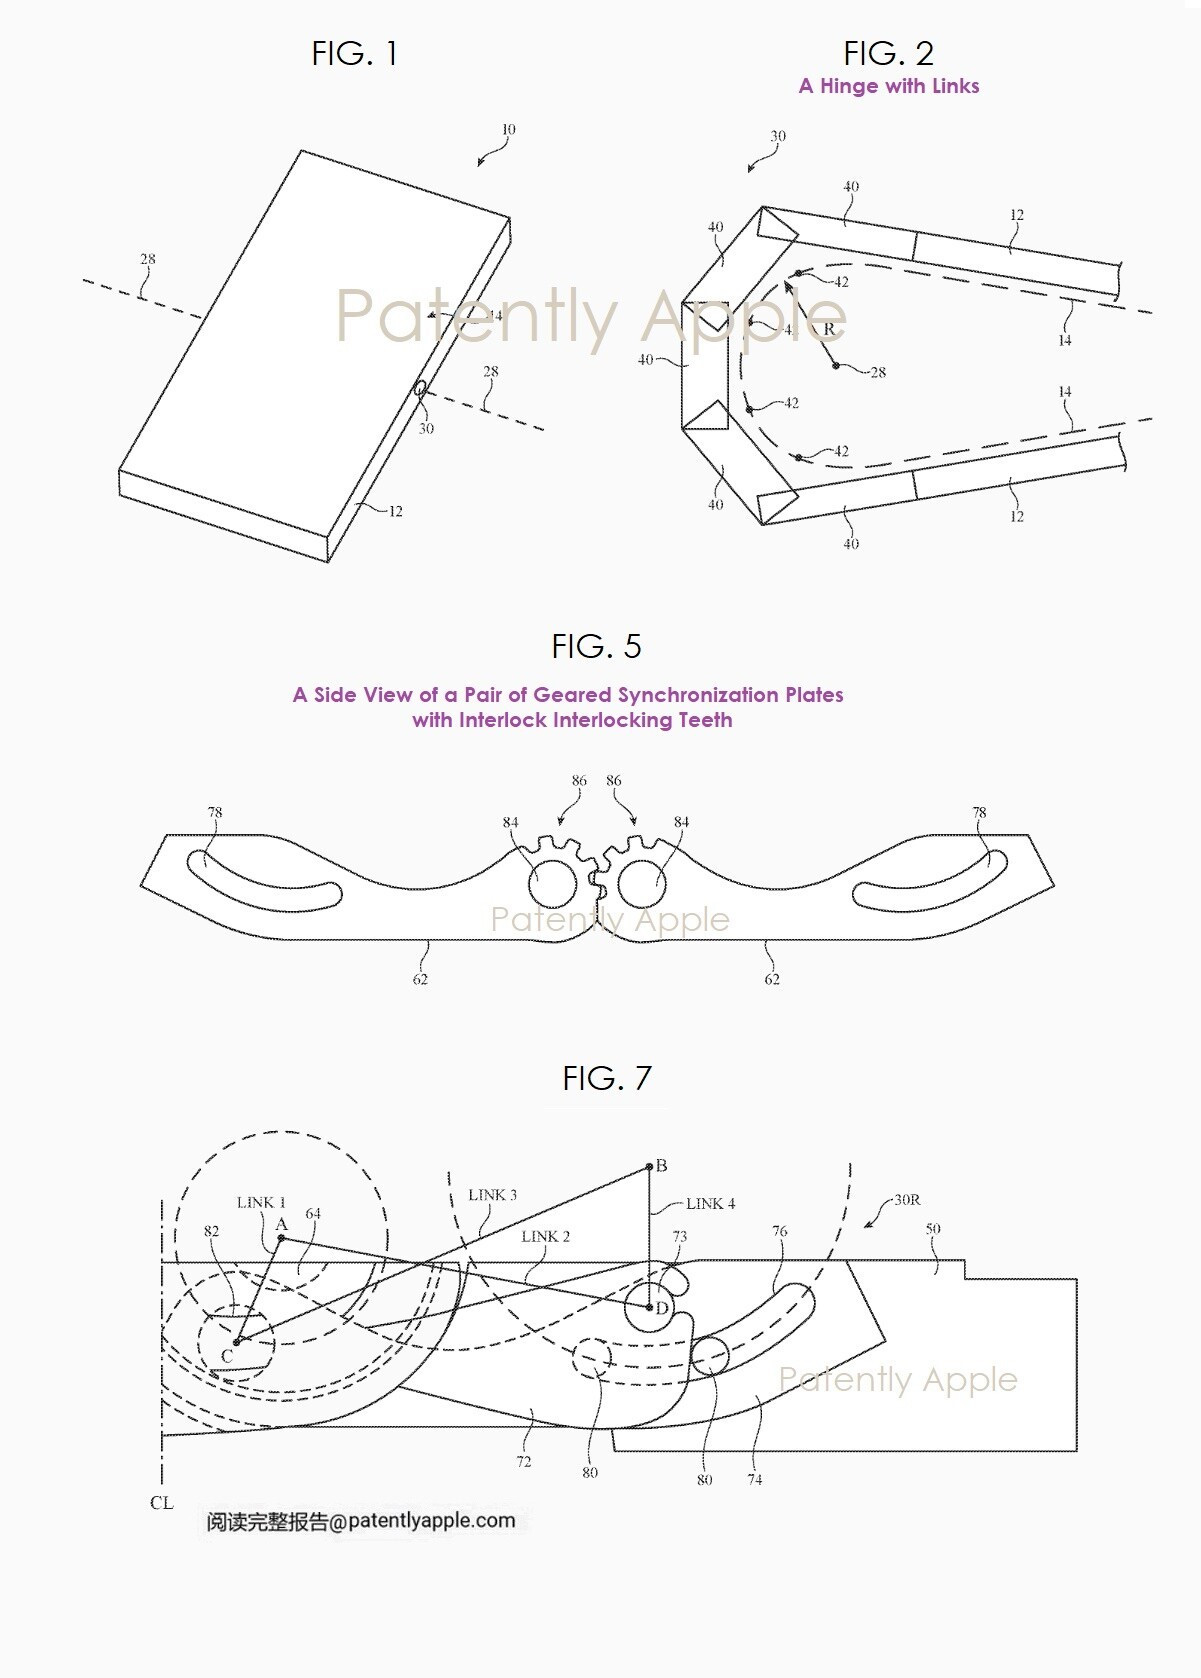 appledan katlanabilir iphone icin yeni patent 0 dQl3jN5S